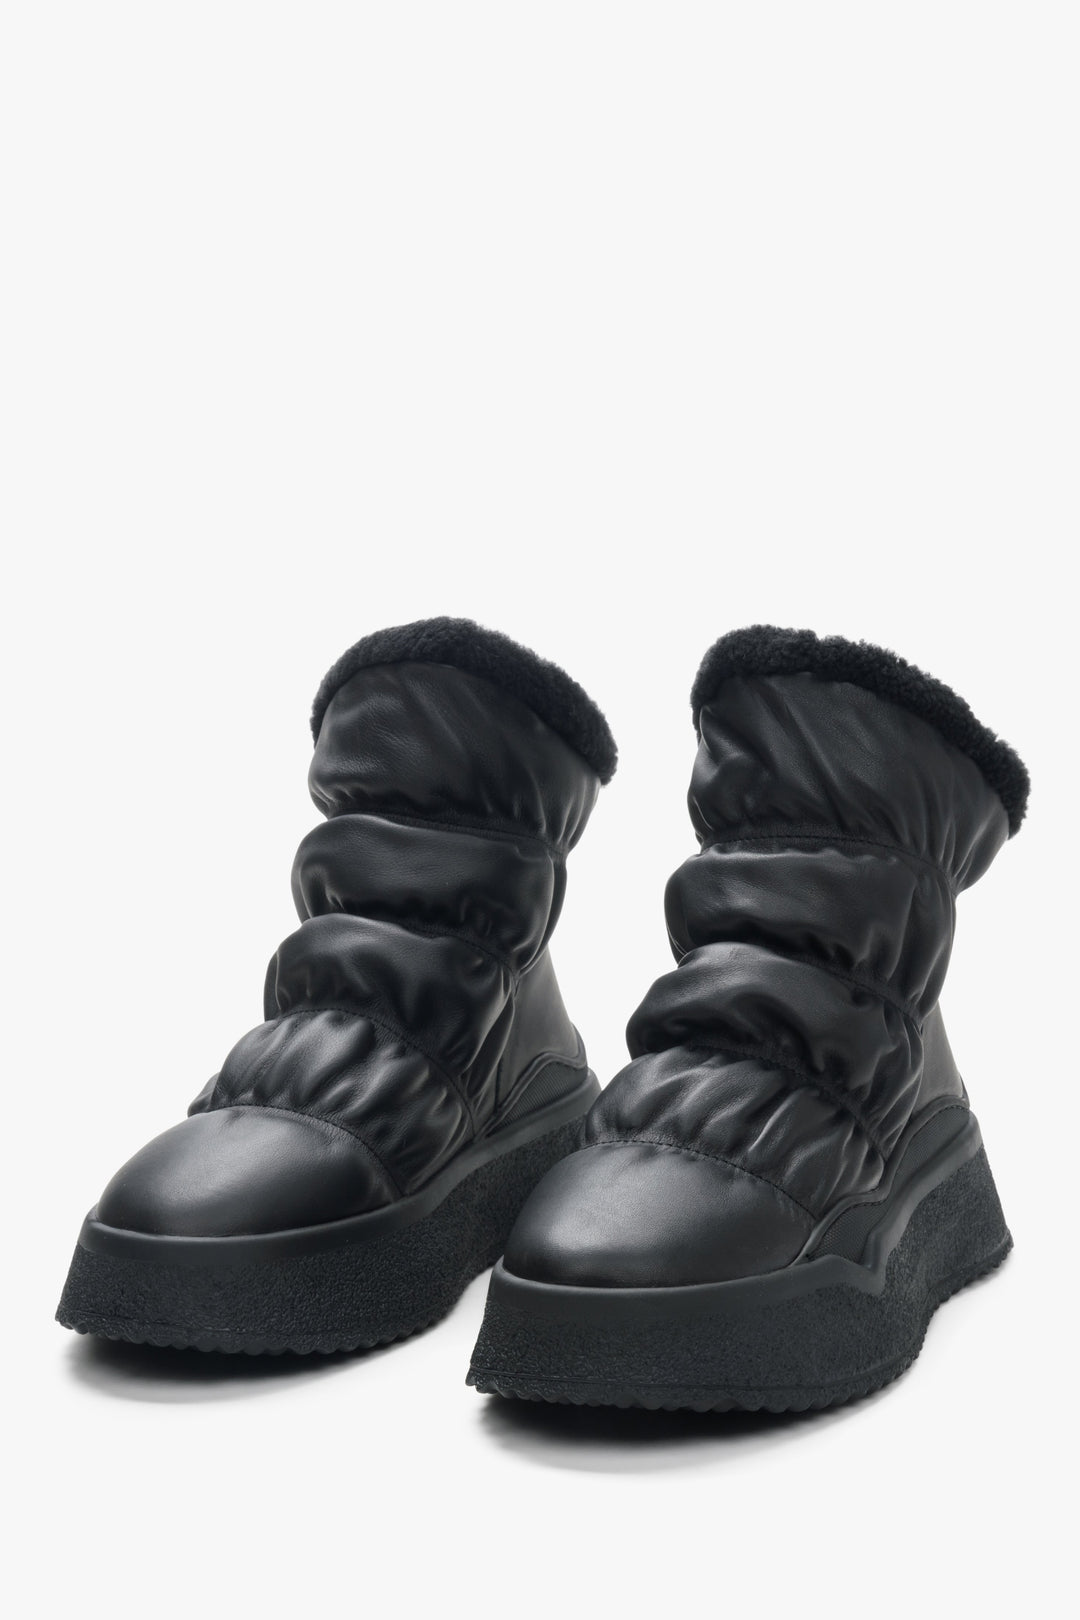 Women's black snow boots Estro - a close-up on shoe toeline.